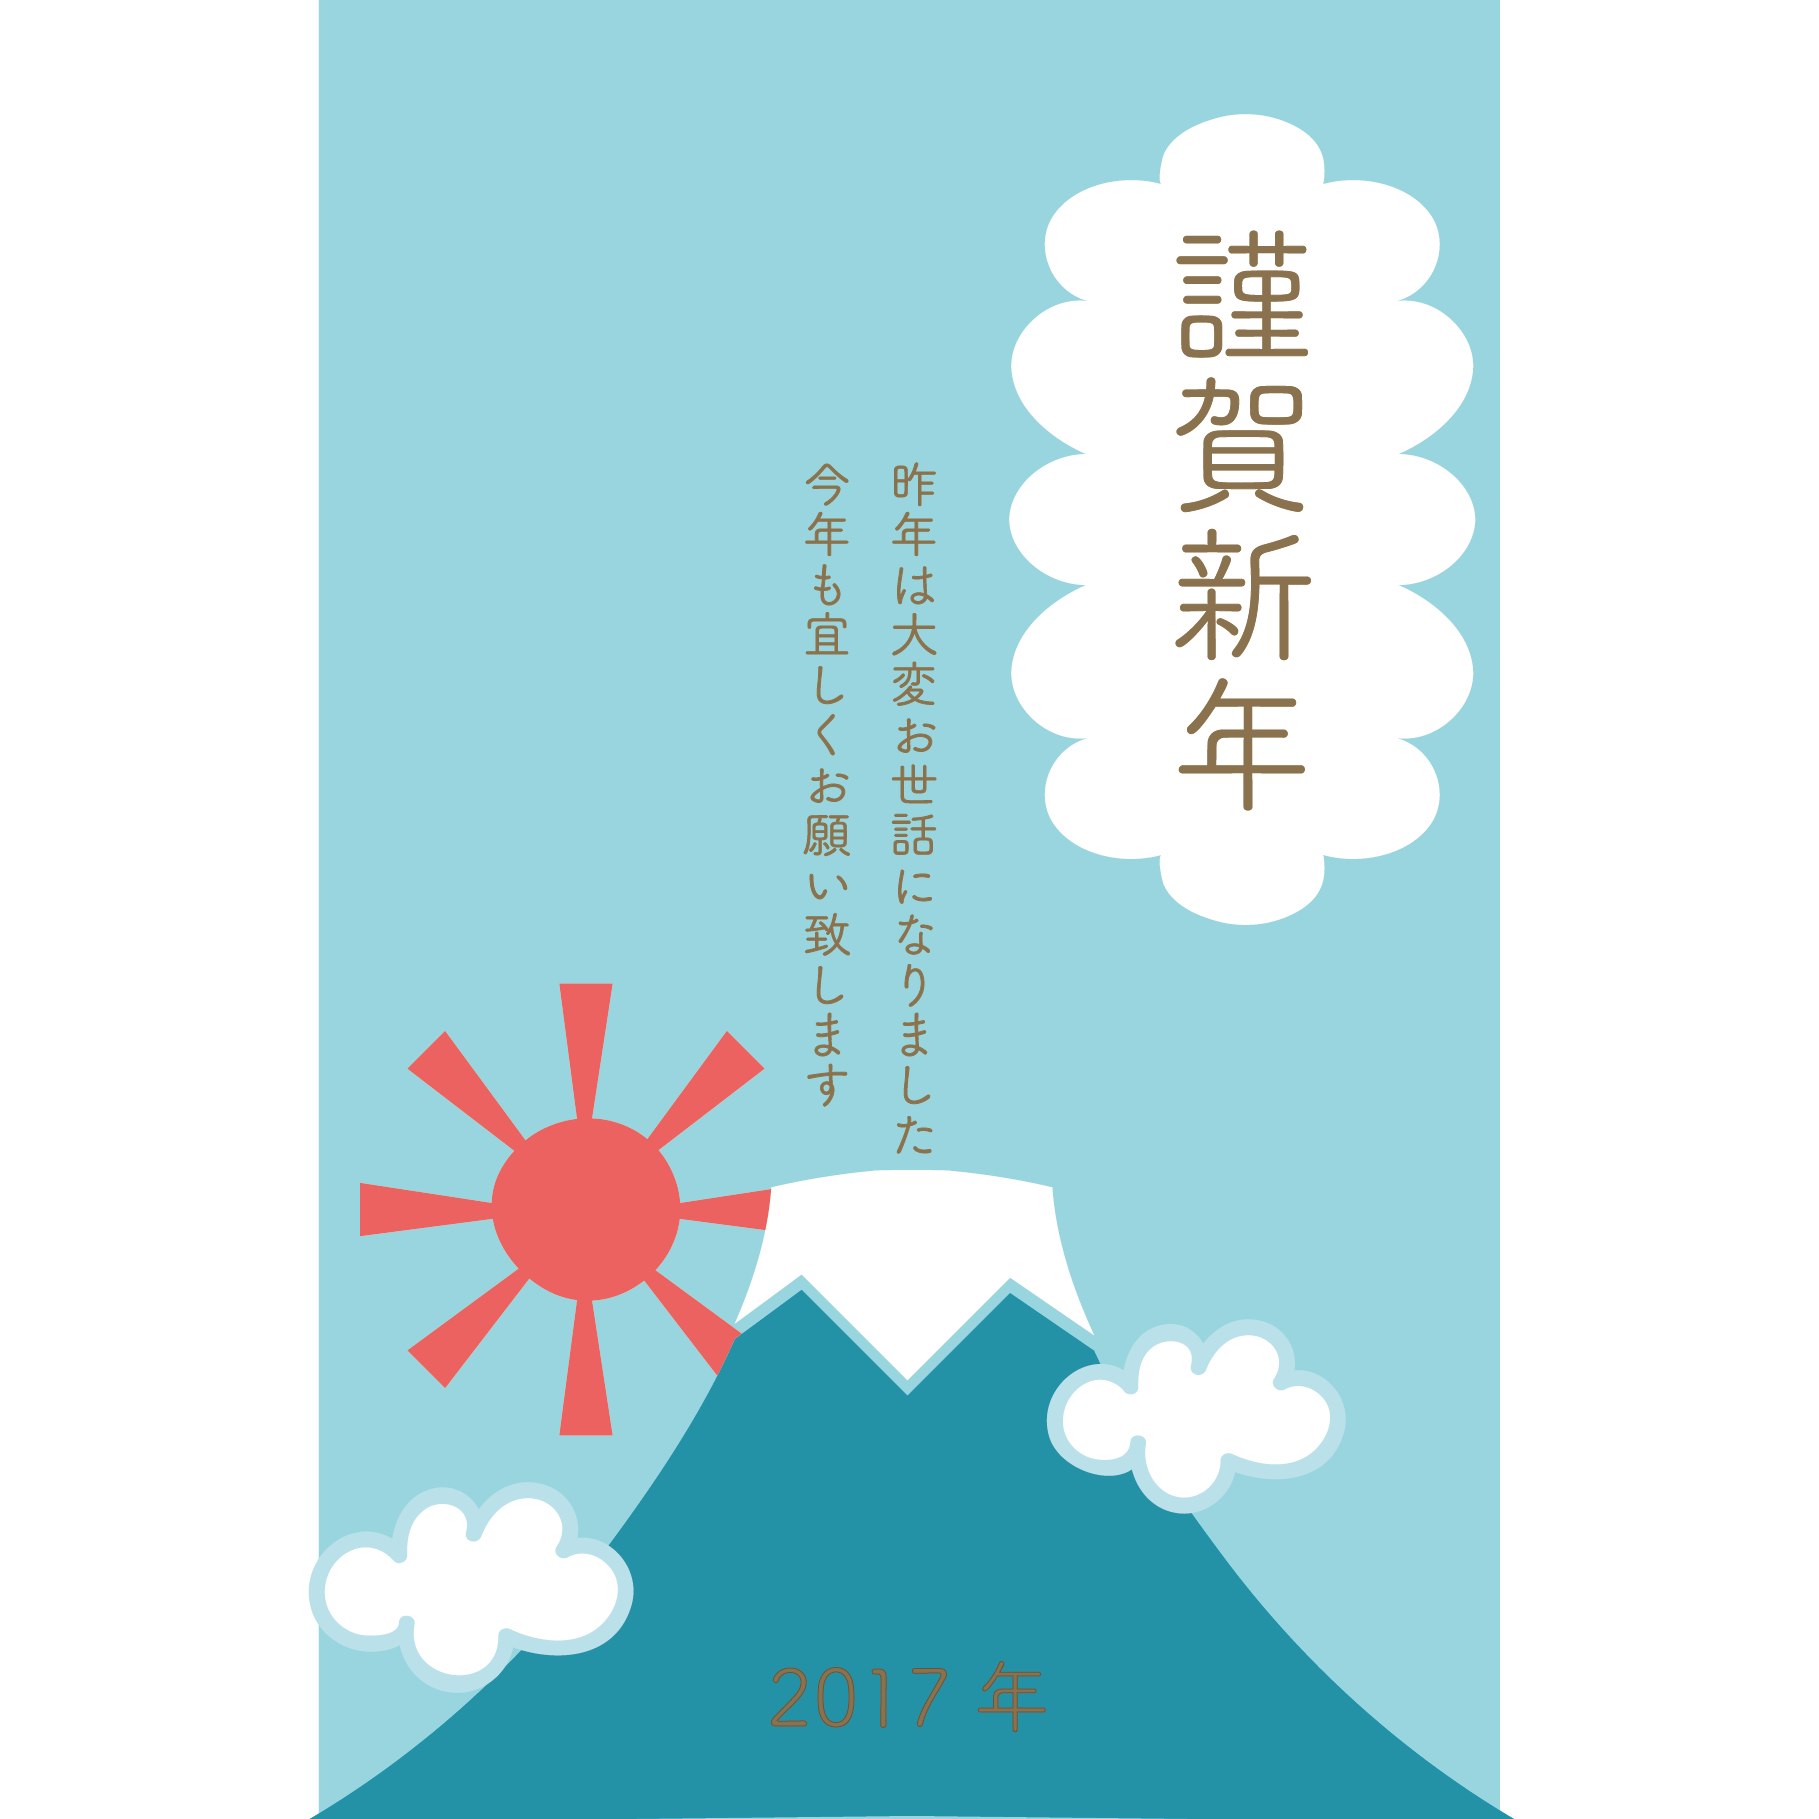 富士山 17年 酉年 新年の年賀状に使えるイラスト集 フリー素材 無料 平成29年 Naver まとめ